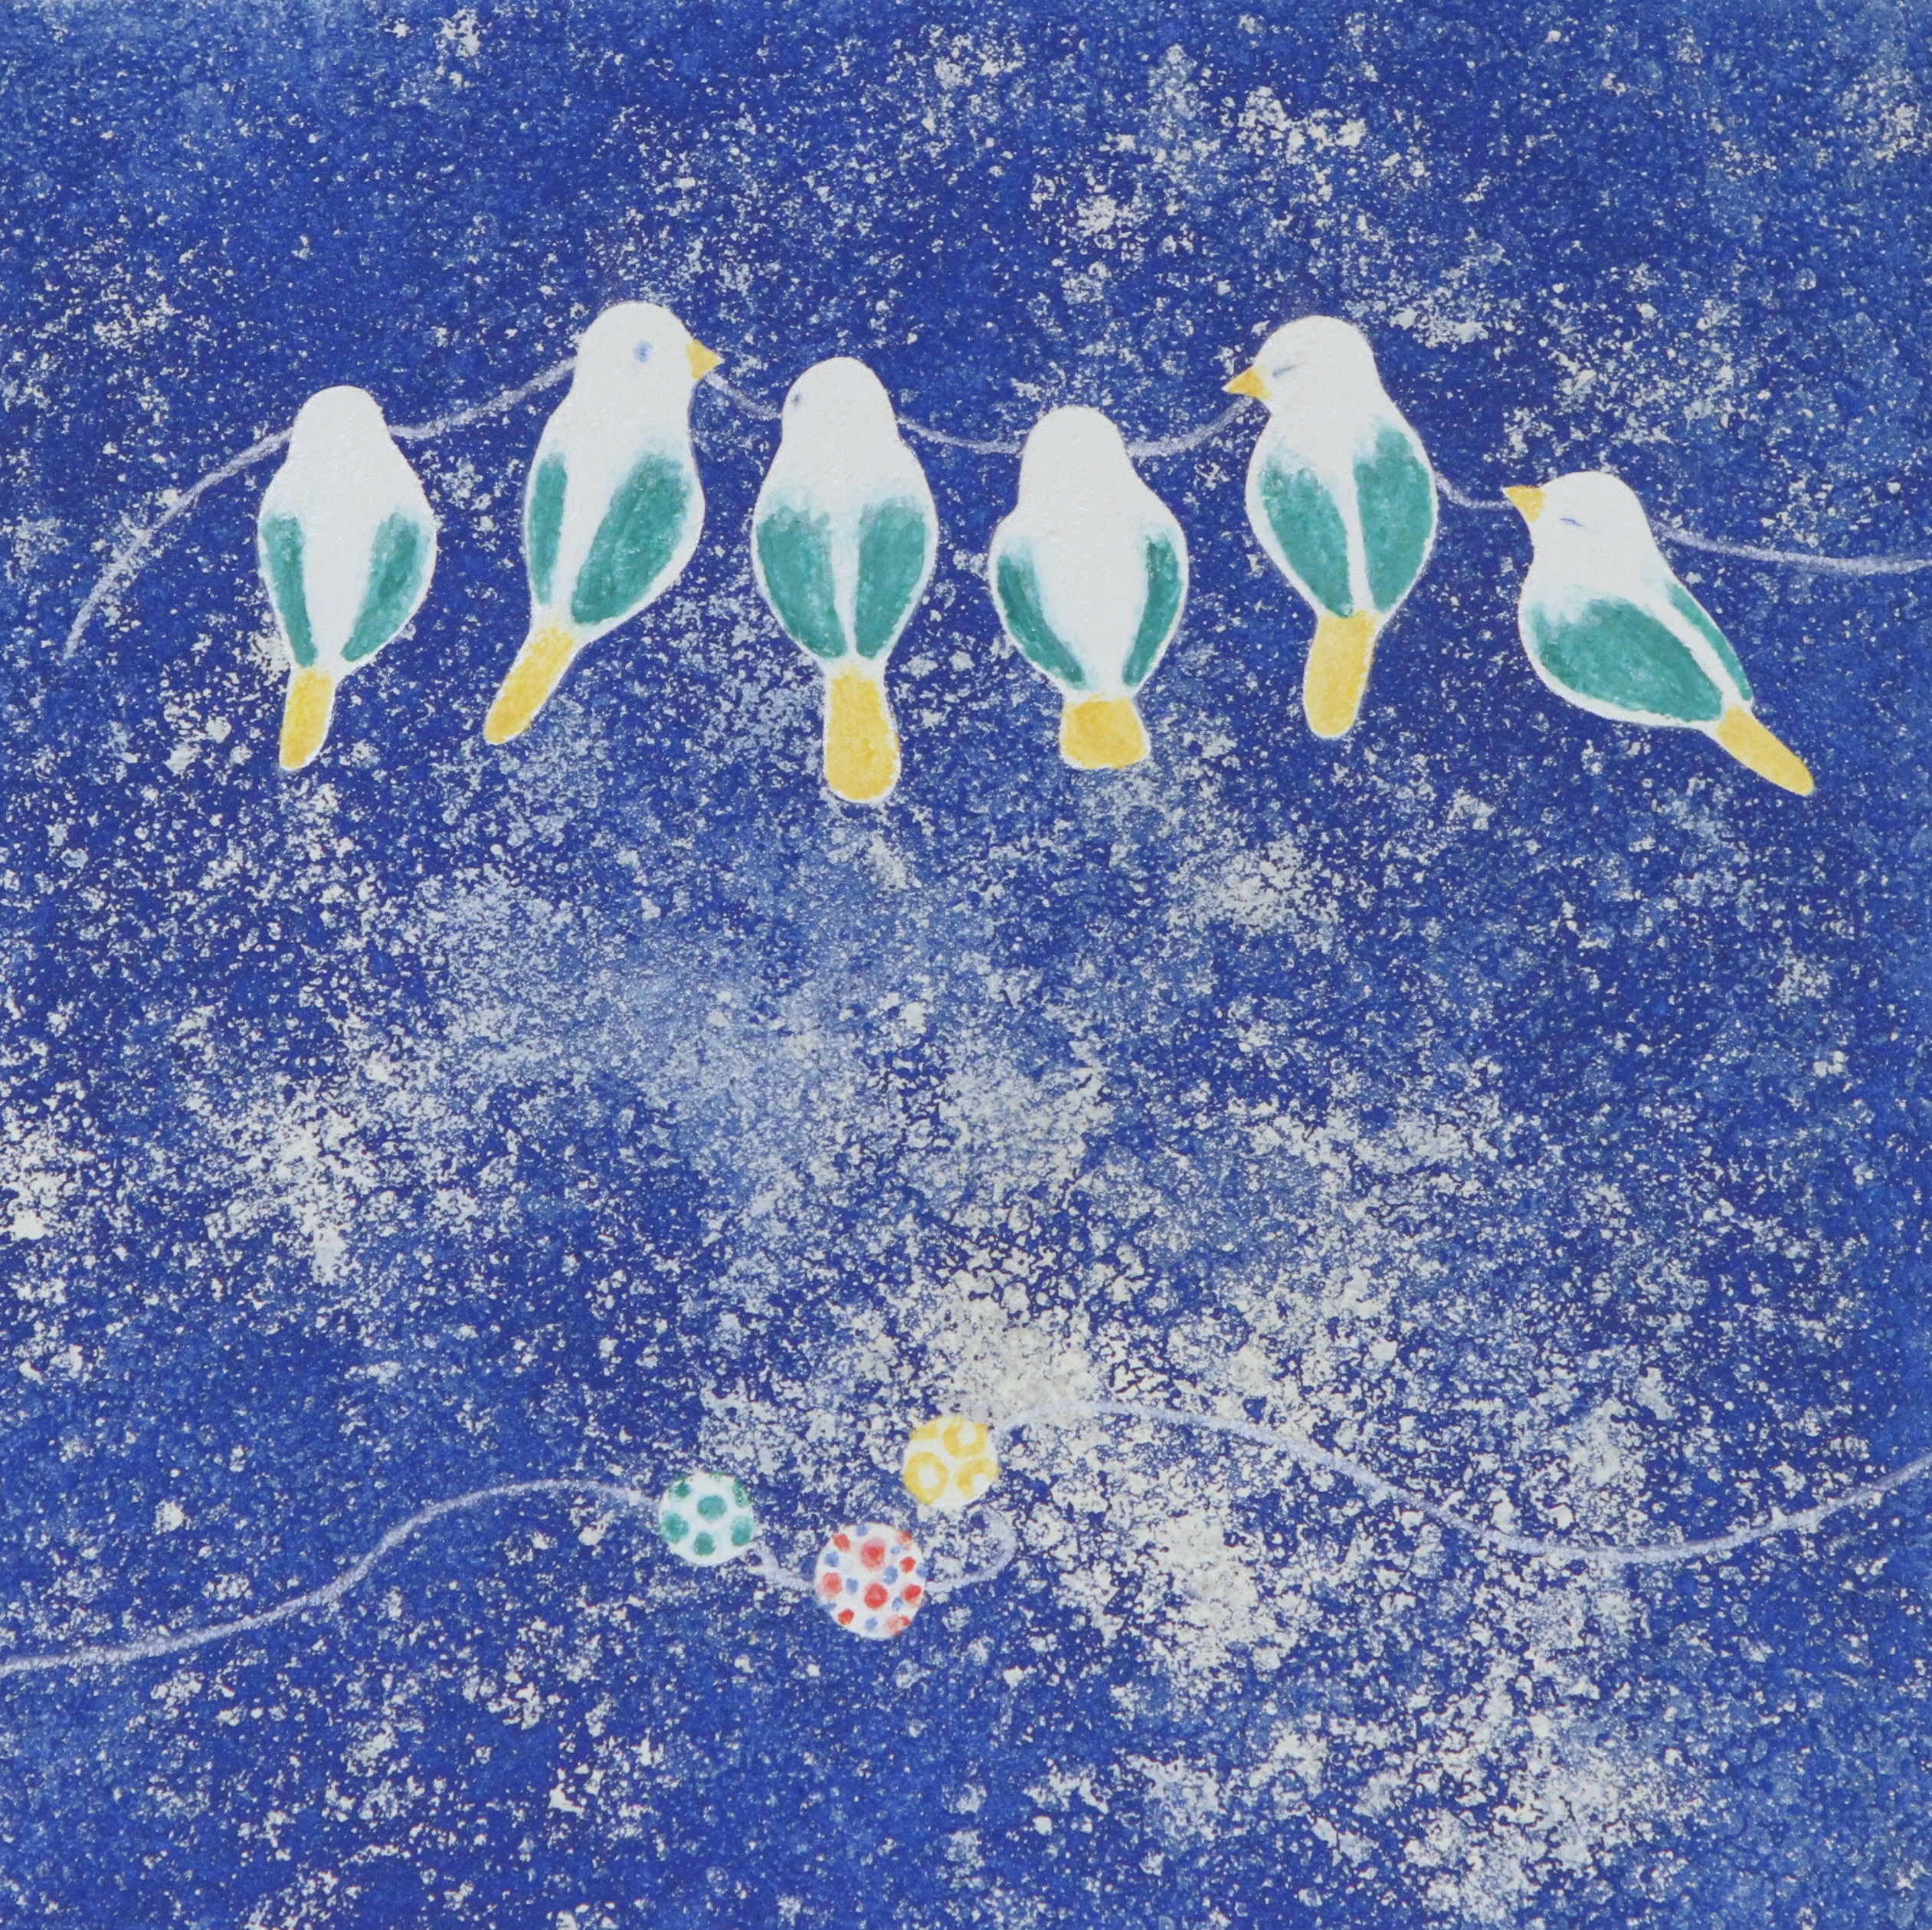 １１月２３日（土・祝）～「ちいさな鳥のはじまりの歌」（2018ボローニャ国際絵本原画展・入選）豊島舞・作品展を開催します！